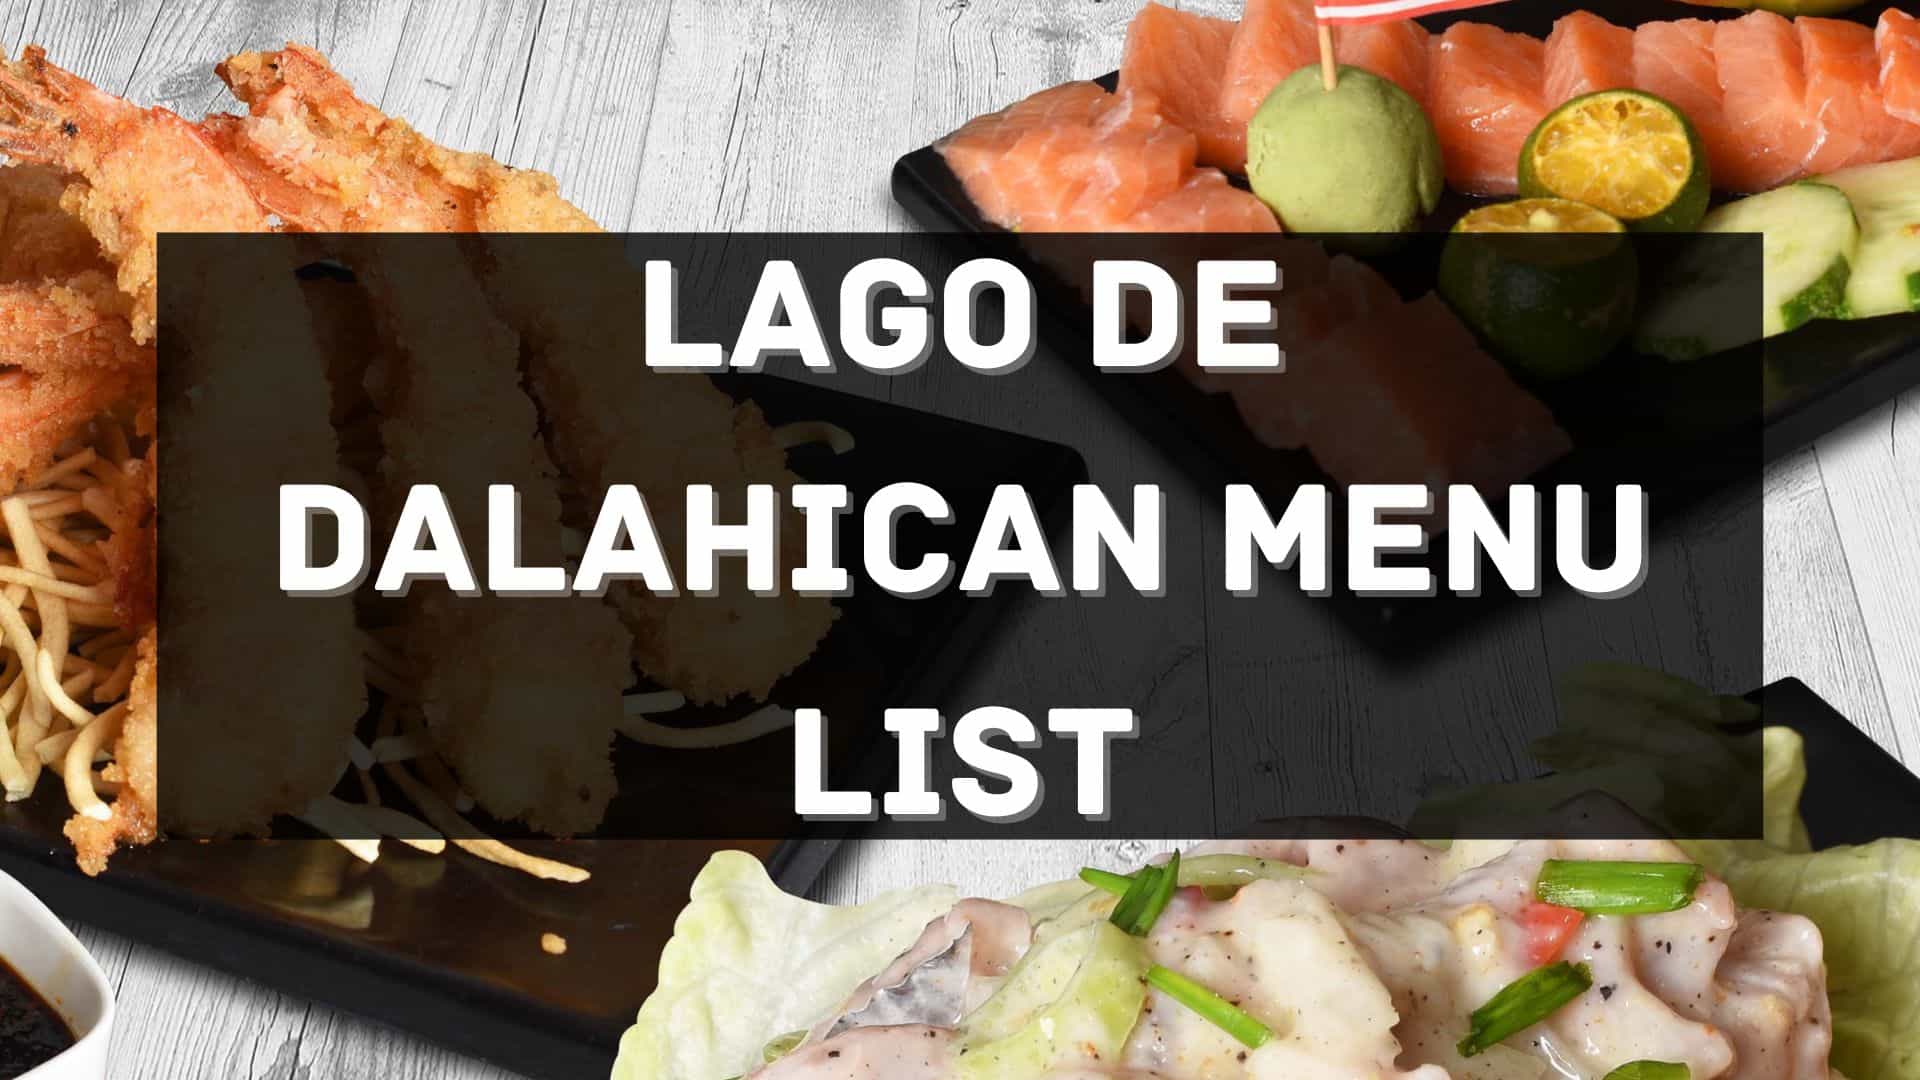 lago de dalahican menu prices philippines